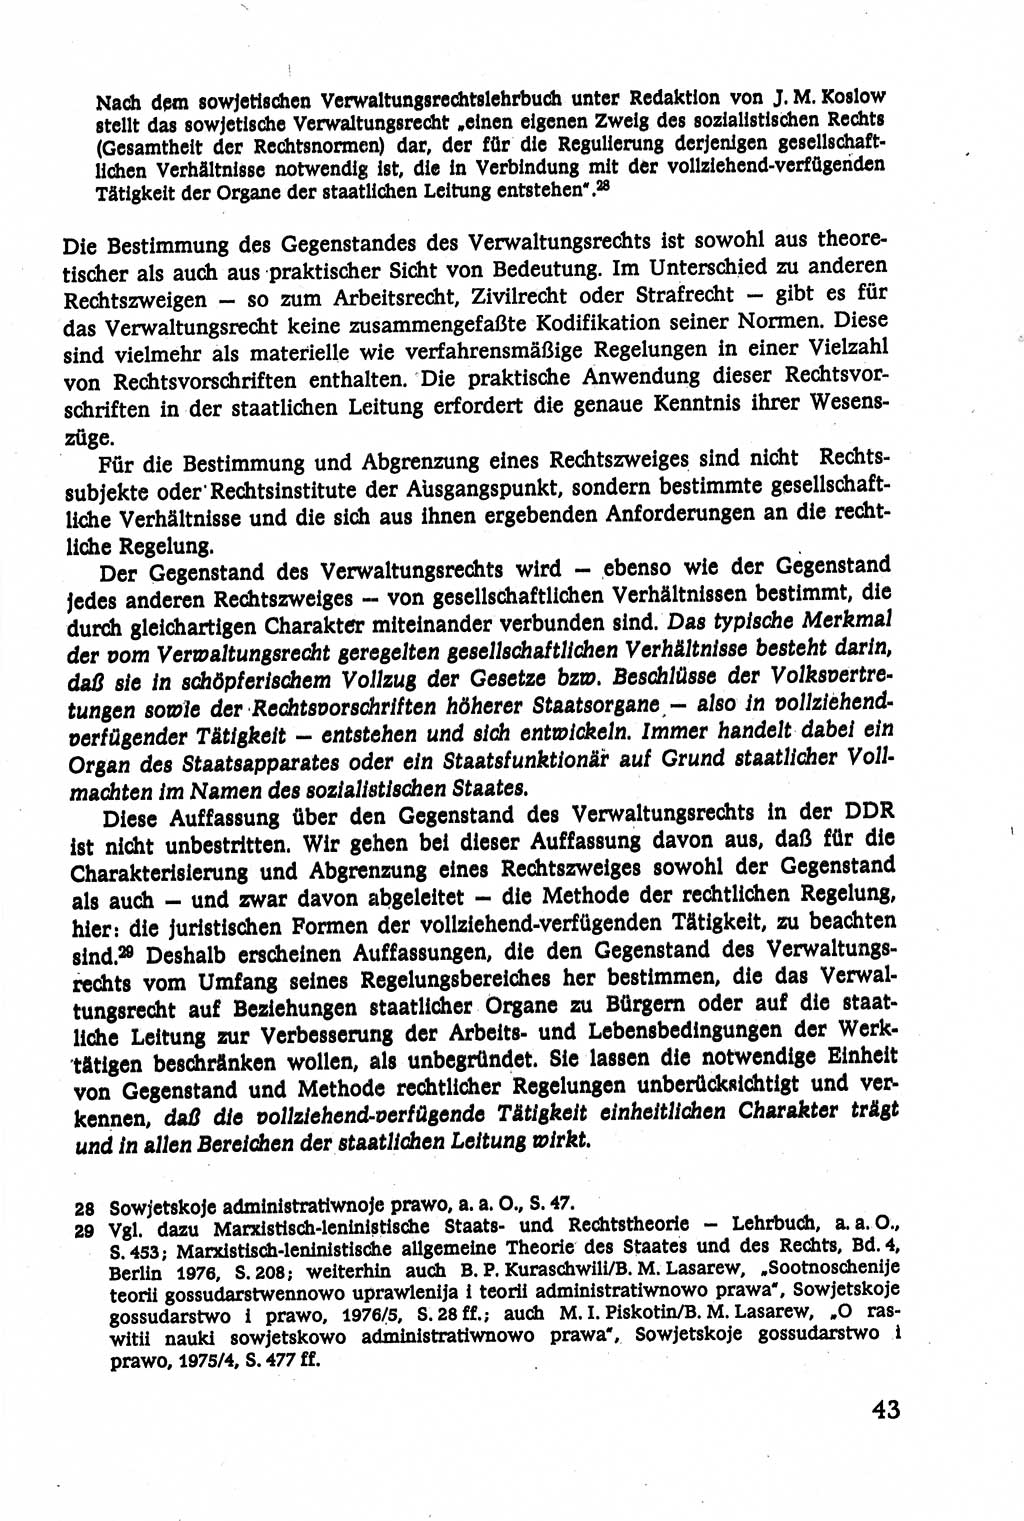 Verwaltungsrecht [Deutsche Demokratische Republik (DDR)], Lehrbuch 1979, Seite 43 (Verw.-R. DDR Lb. 1979, S. 43)